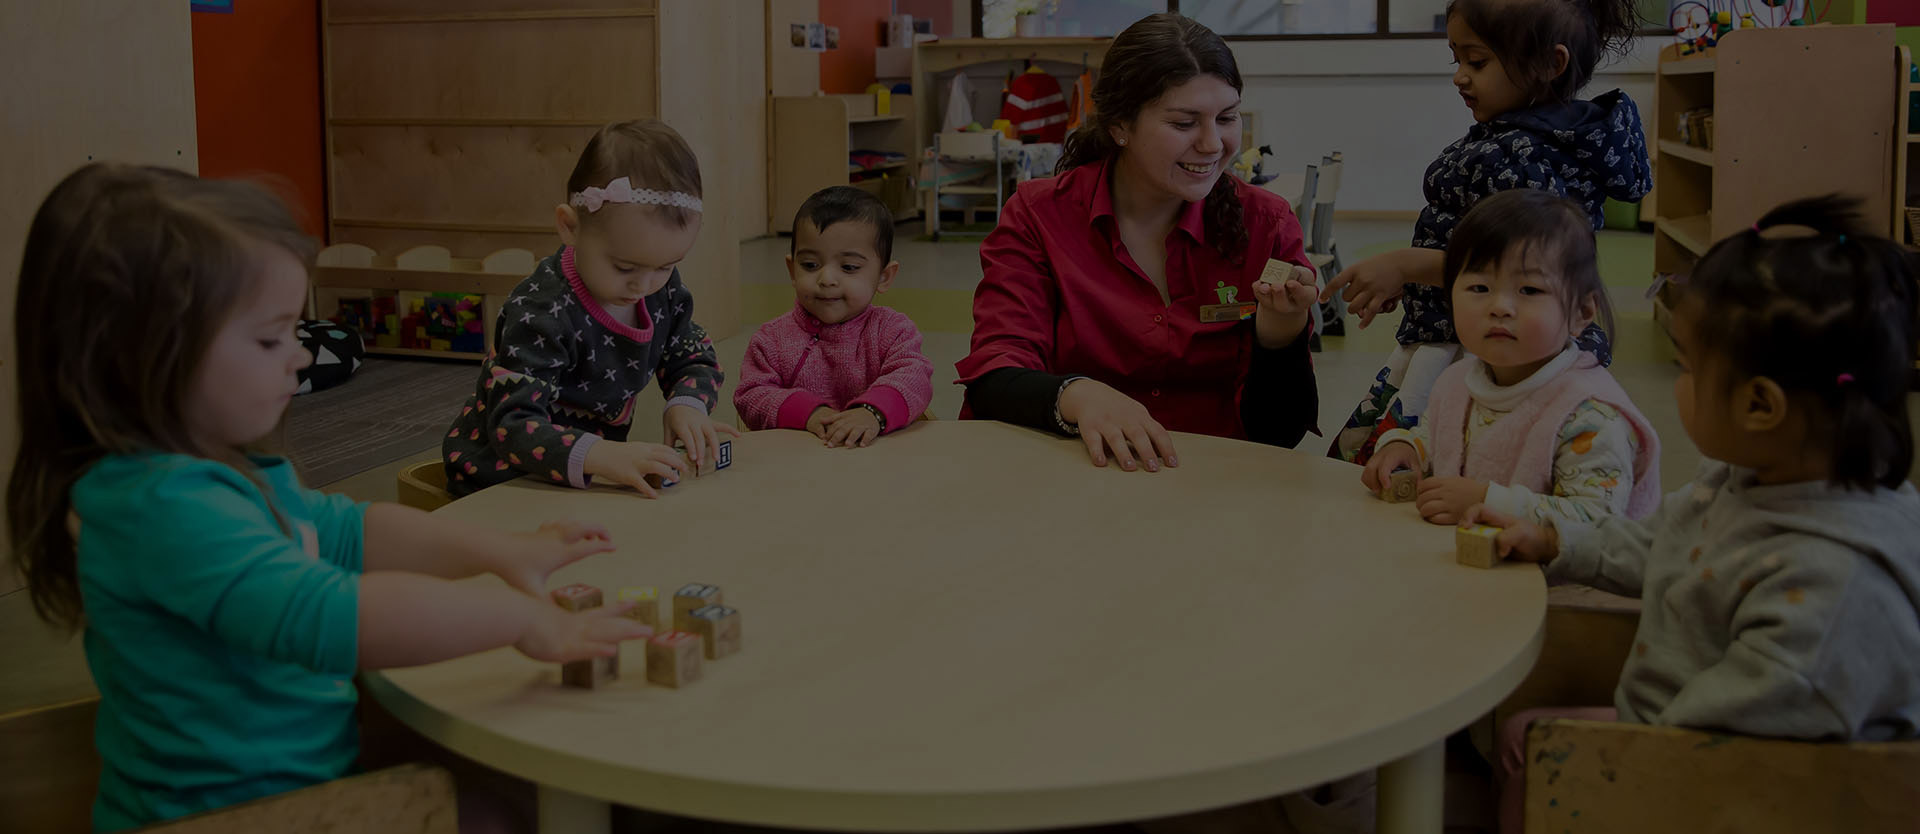 Reggio Emilia Childcare Centres | About Us